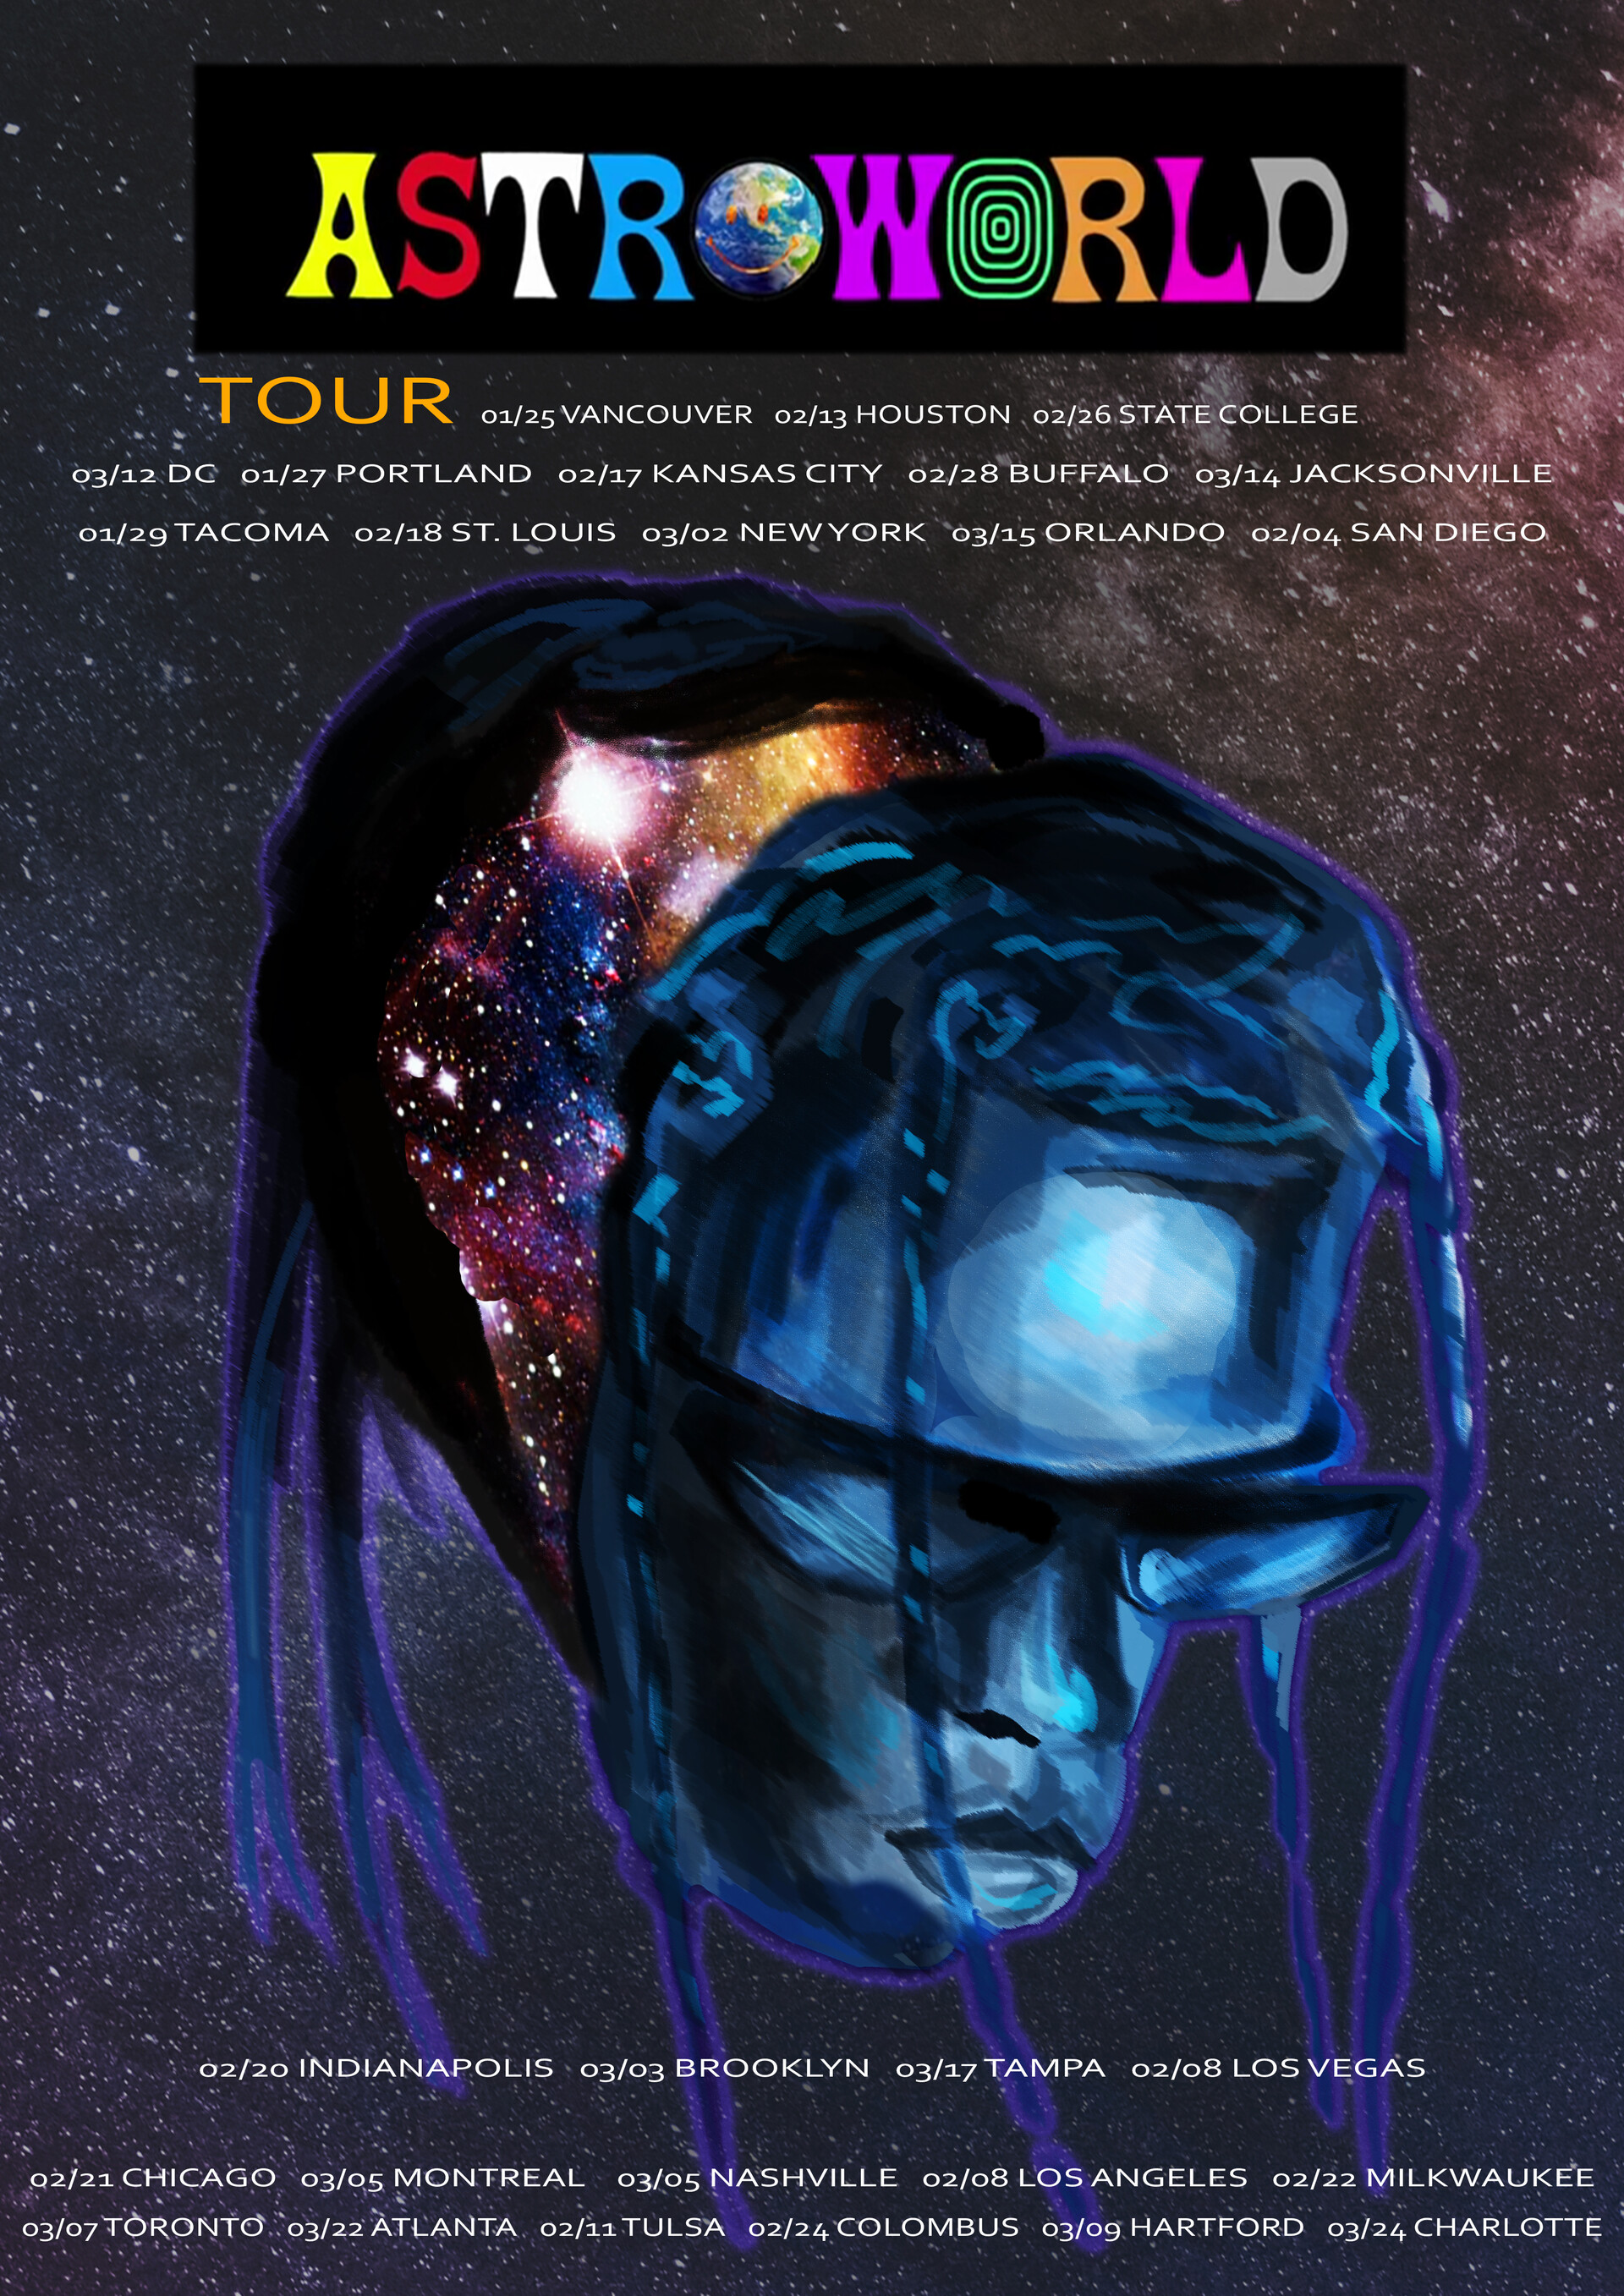 ArtStation - Poster for the Astroworld festival